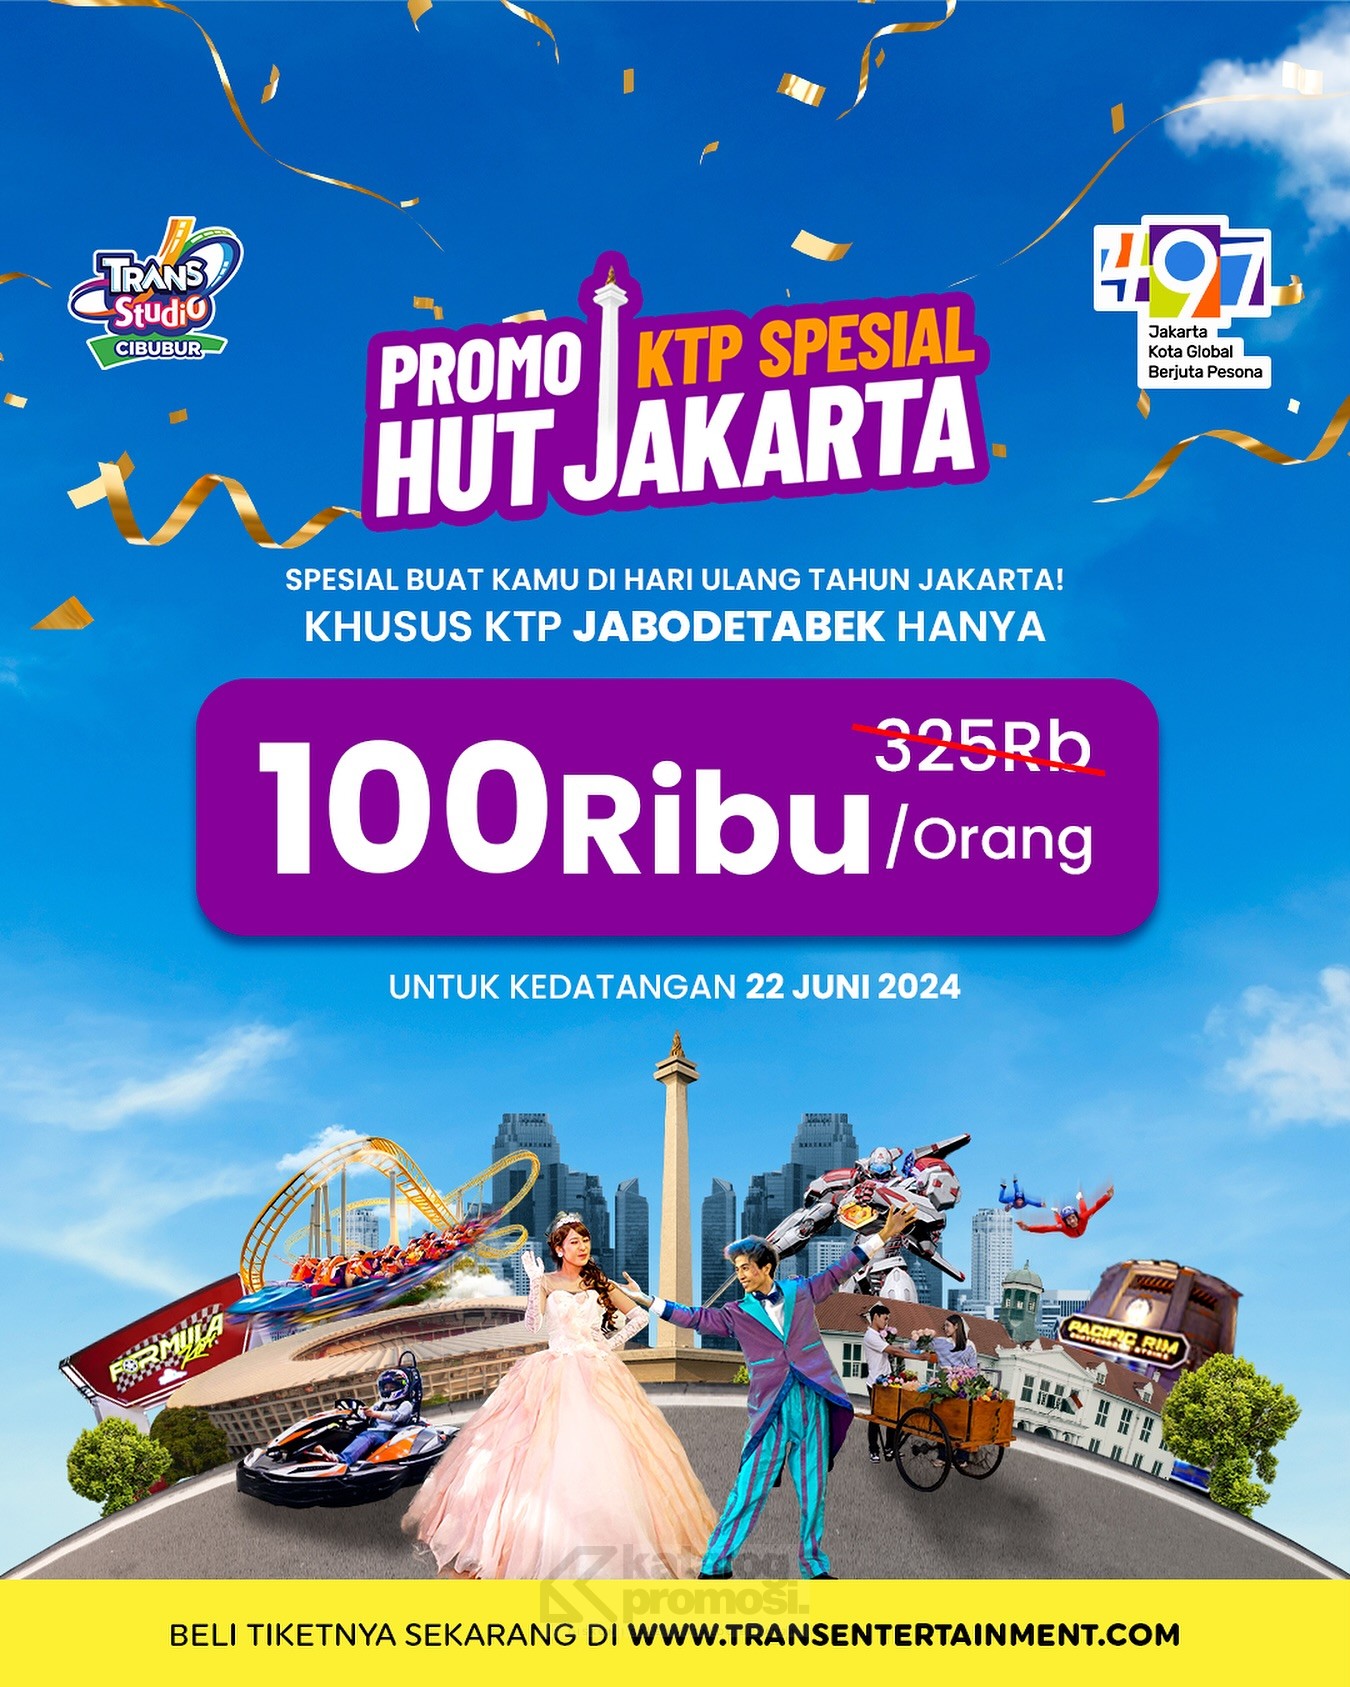 TRANS STUDIO CIBUBUR Promo KTP SPESIAL HUT JAKARTA , TIKET MASUK cuma Rp. 100RIBU berlaku untuk kedatangan di tanggal 22 Juni 2024